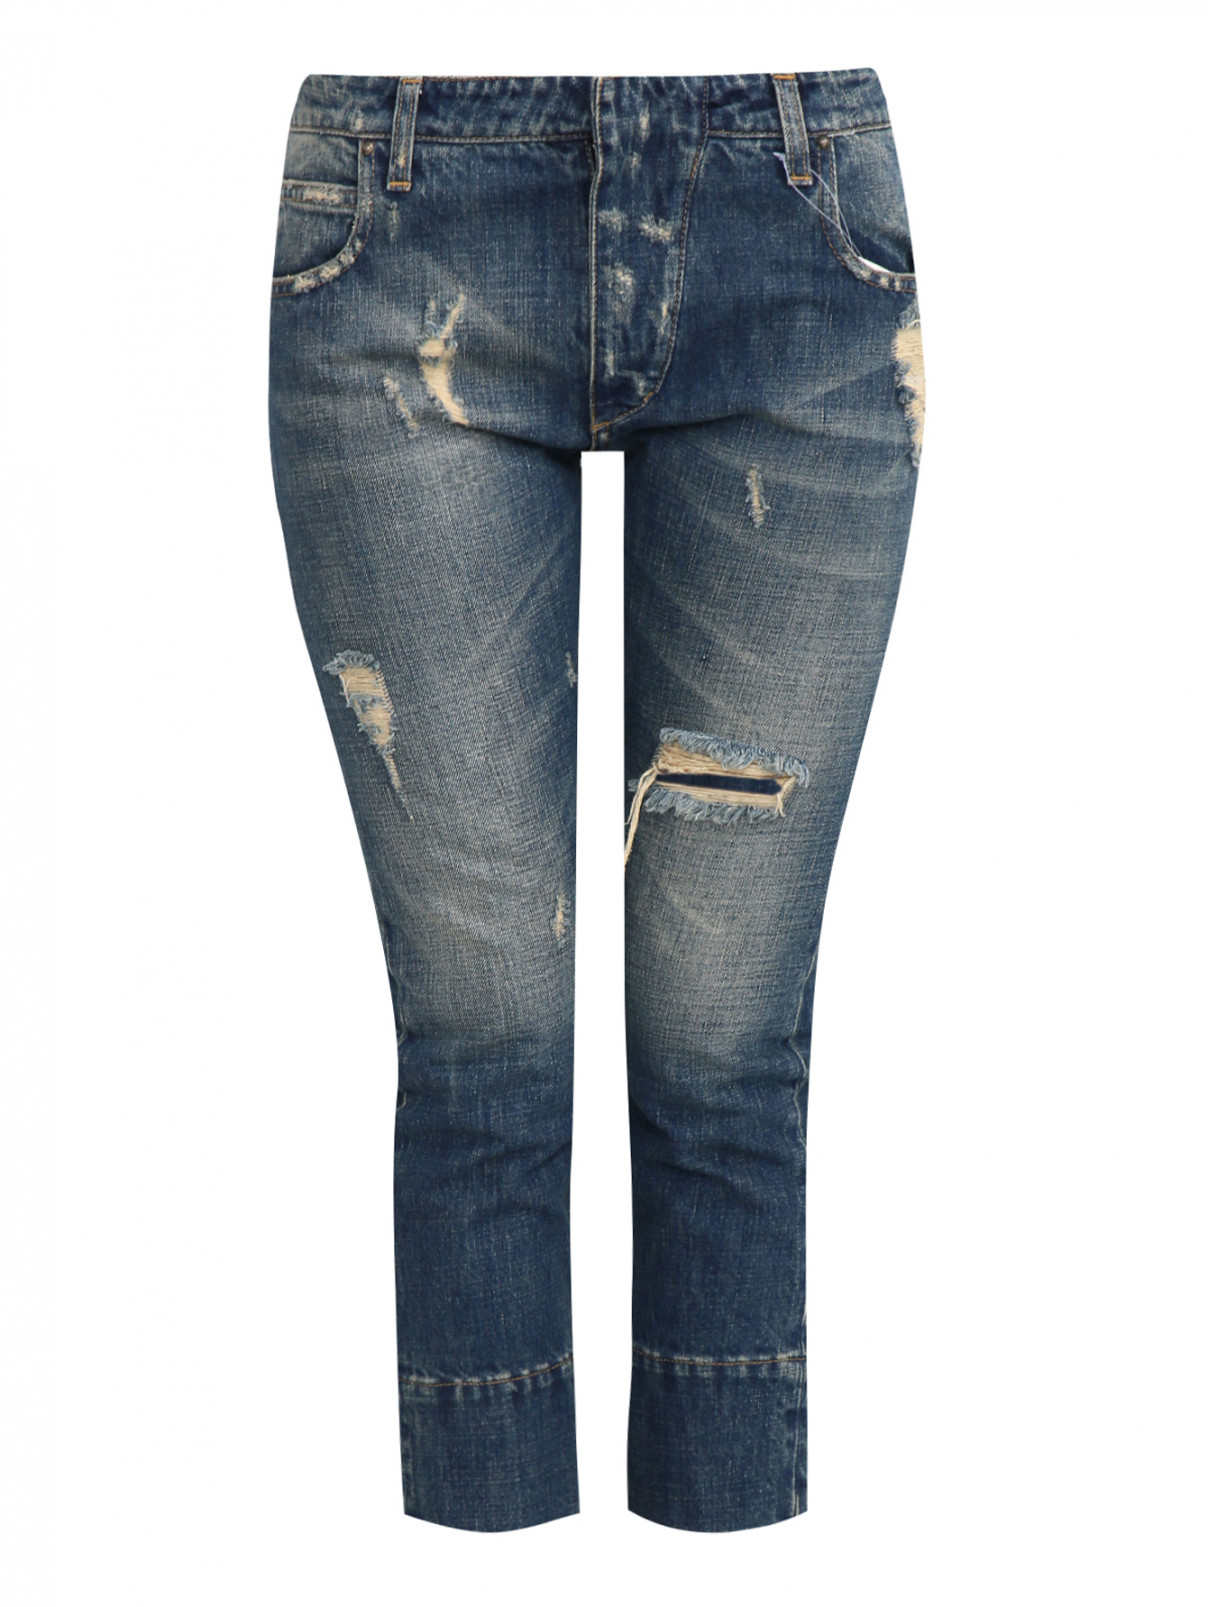 Бриджи джинсовые с потертостями Pierre Balmain  –  Общий вид  – Цвет:  Синий